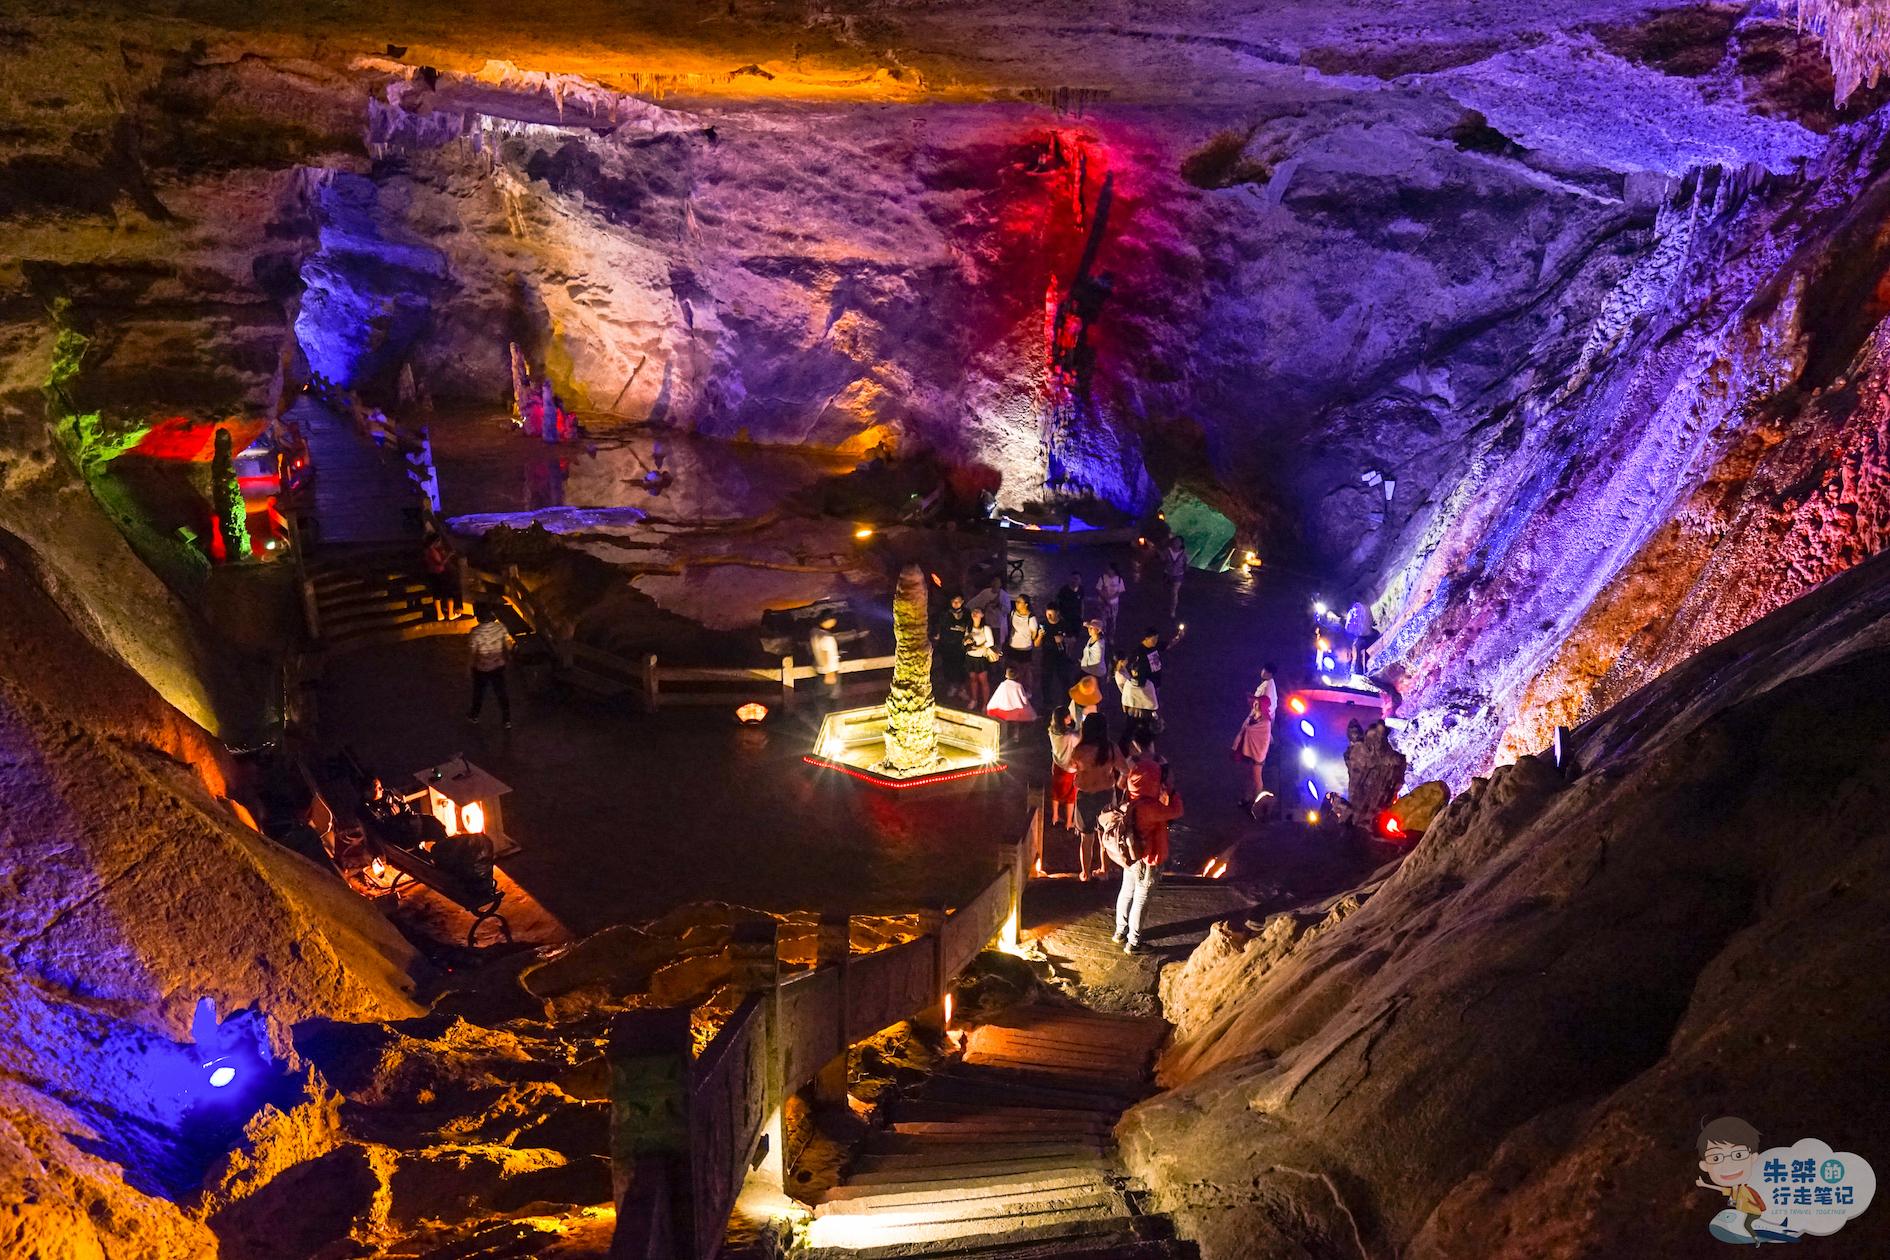 安徽历史最悠久溶洞景区 被誉为"洞中黄山" 两汉时已是旅游胜地